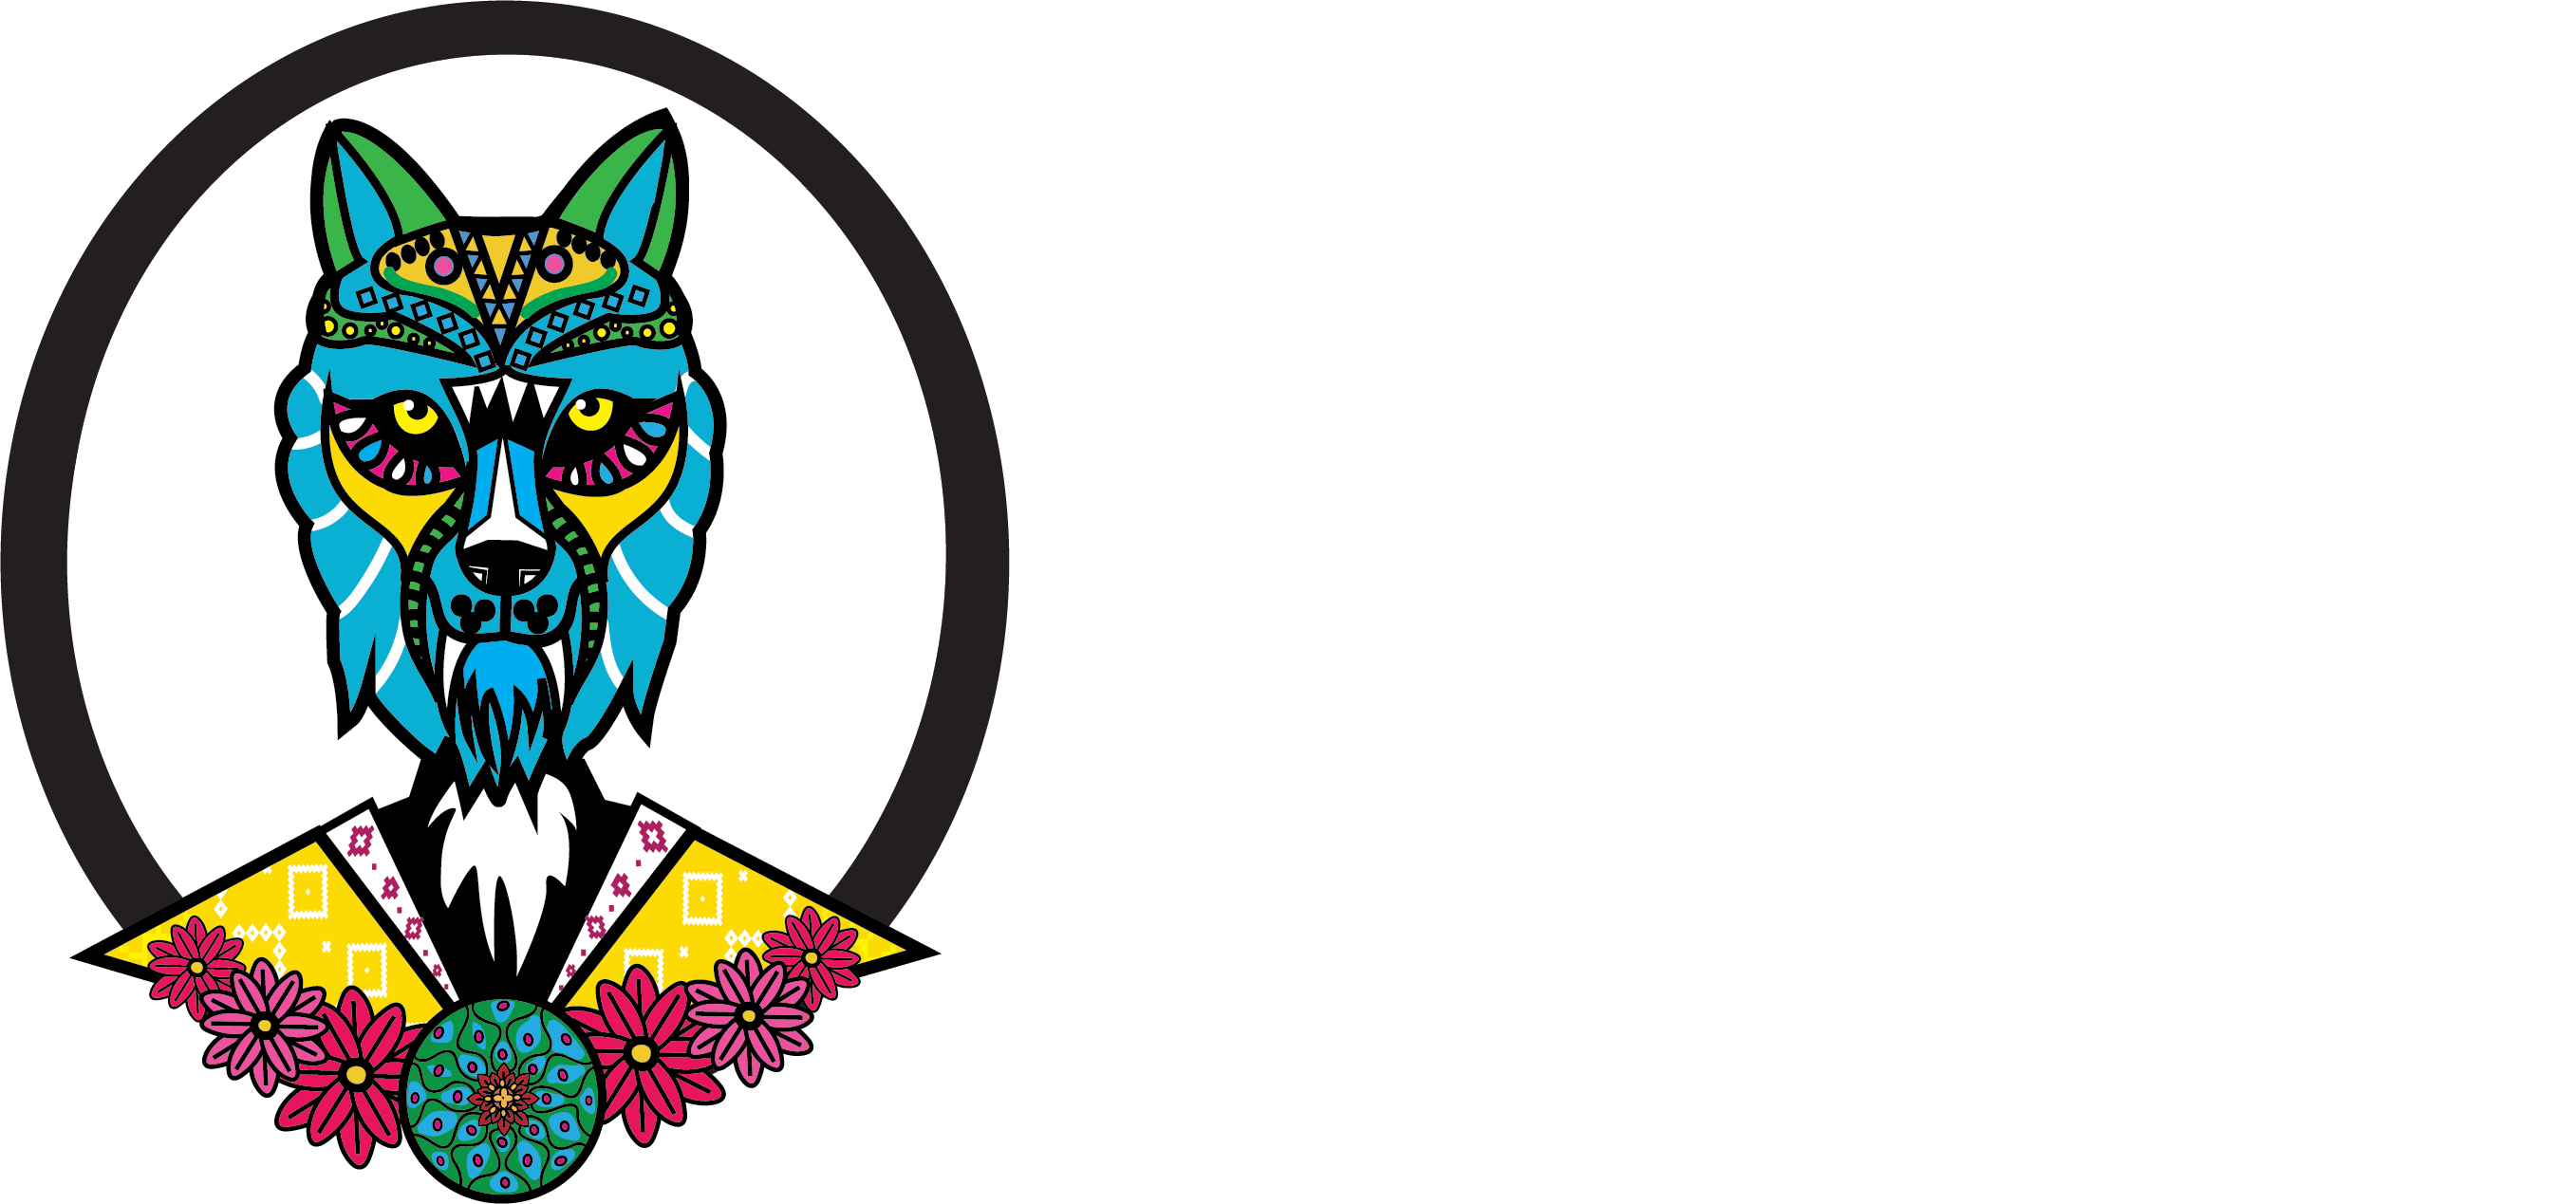 Lobo Mestizo COMIDA MESOAMERICANA - BLANCO